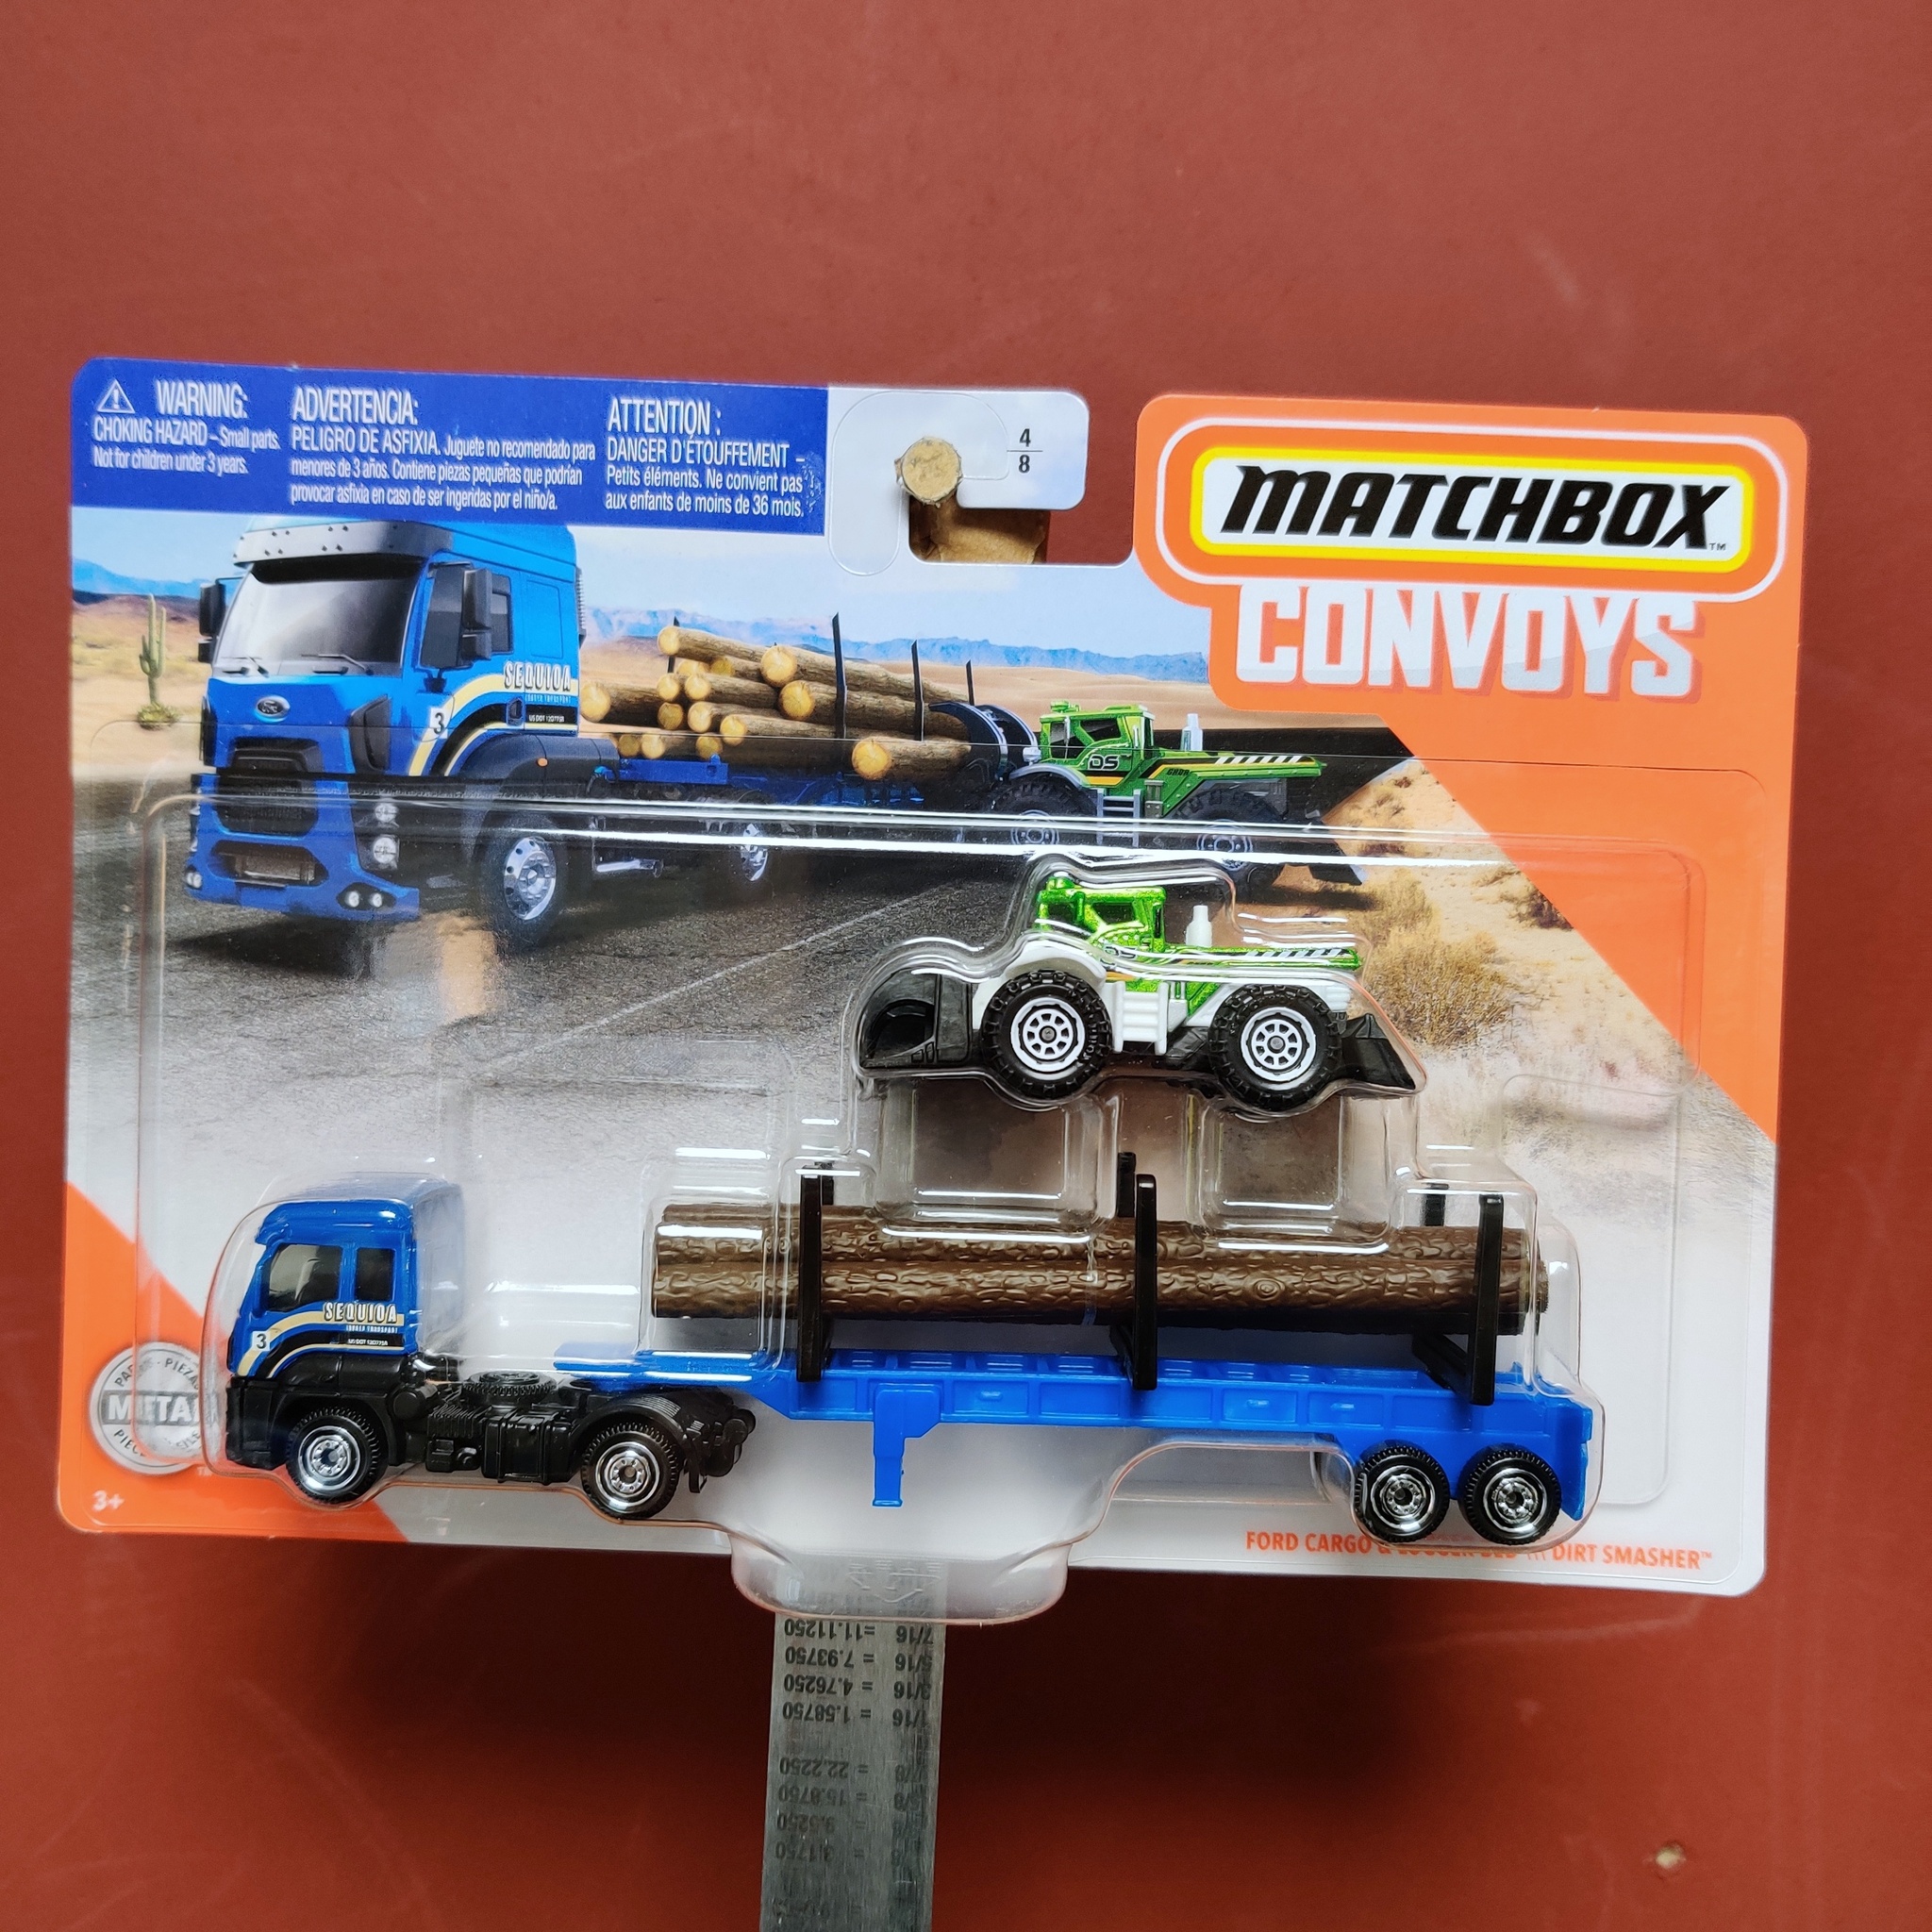 Skala 1/64 Matchbox "Convoys" - Ford Cargo & Logger Bed - Dirt Smasher